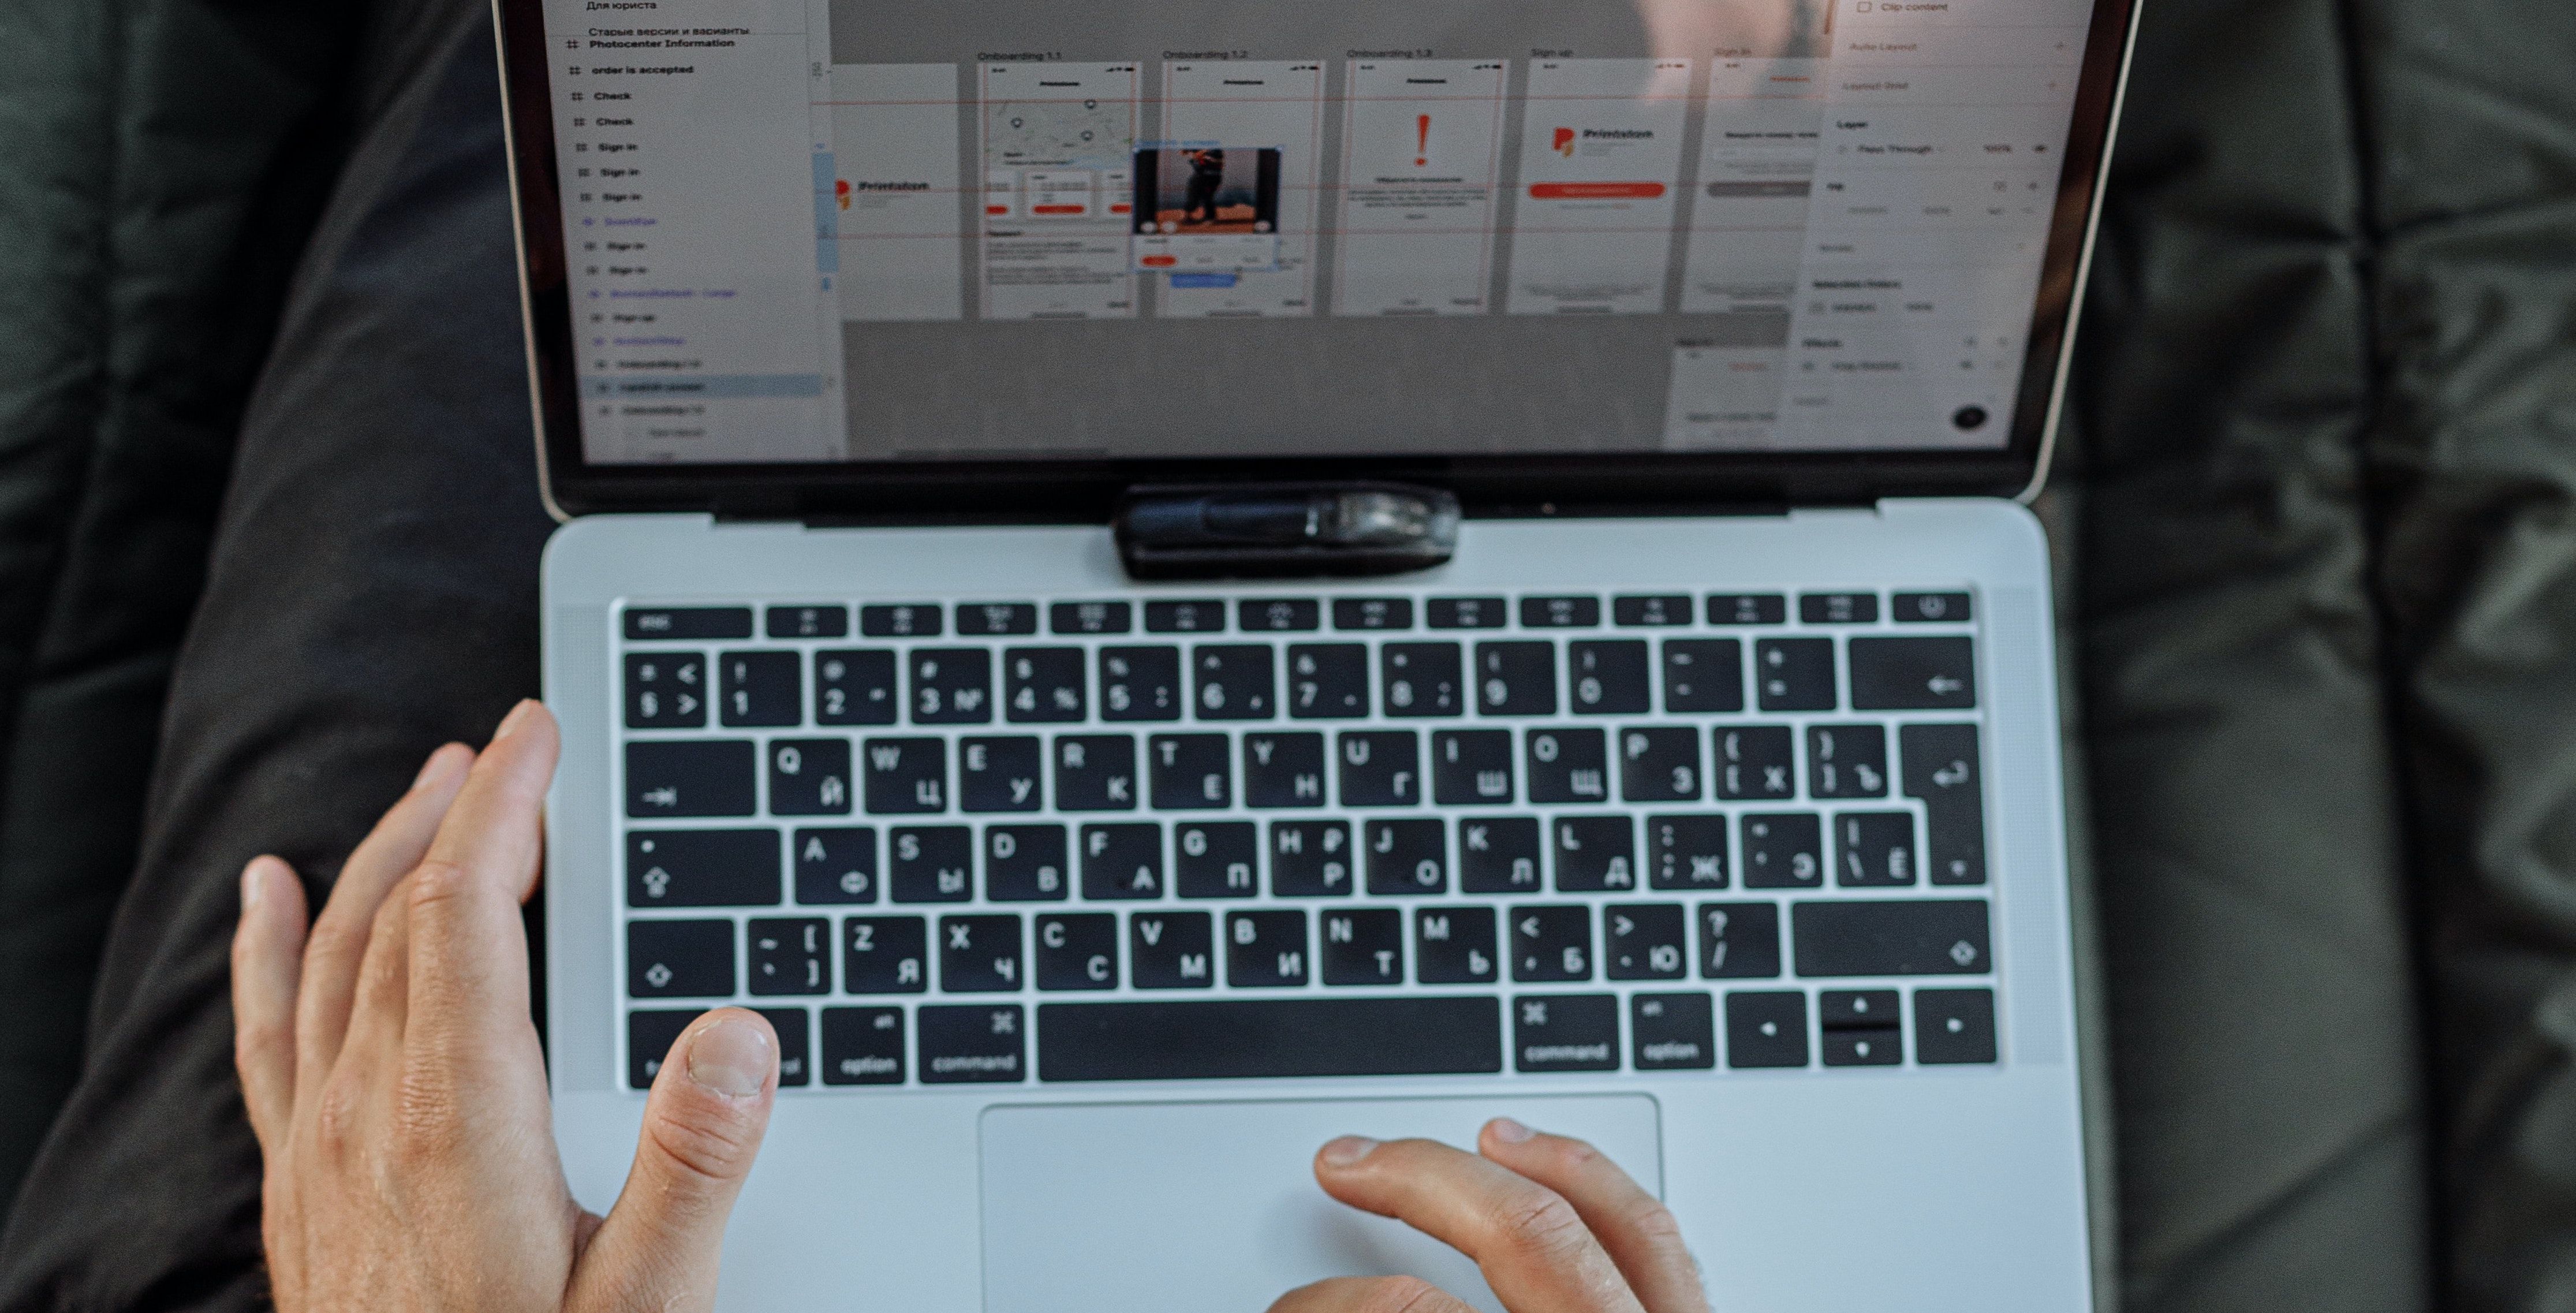 Hands on MacBook side and trackpad - Come visualizzare la cronologia degli appunti su un Mac